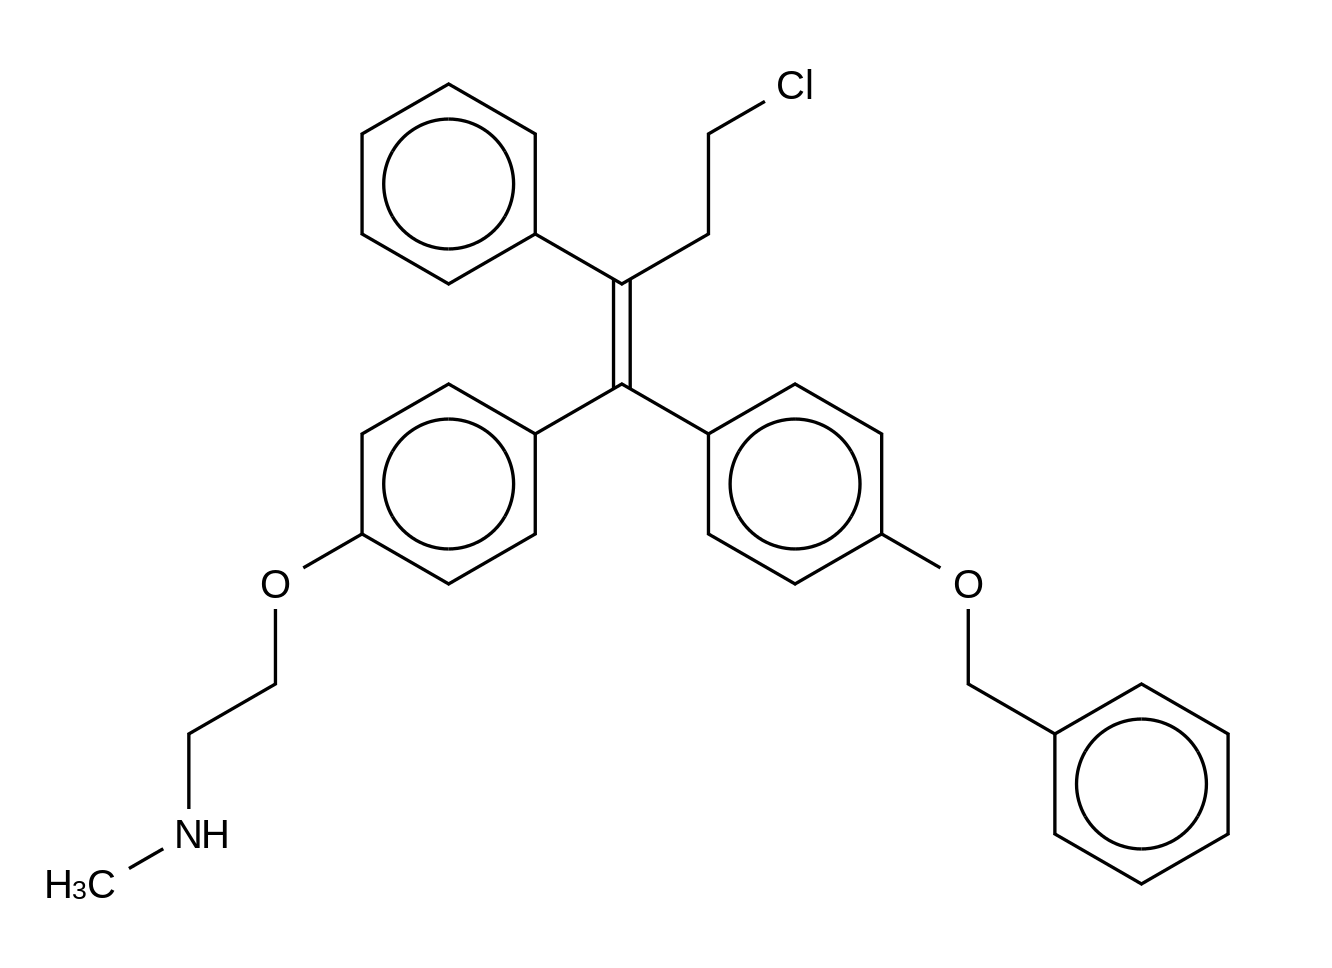 N-Desmethyl 4-Benzyloxy Toremifene HCl